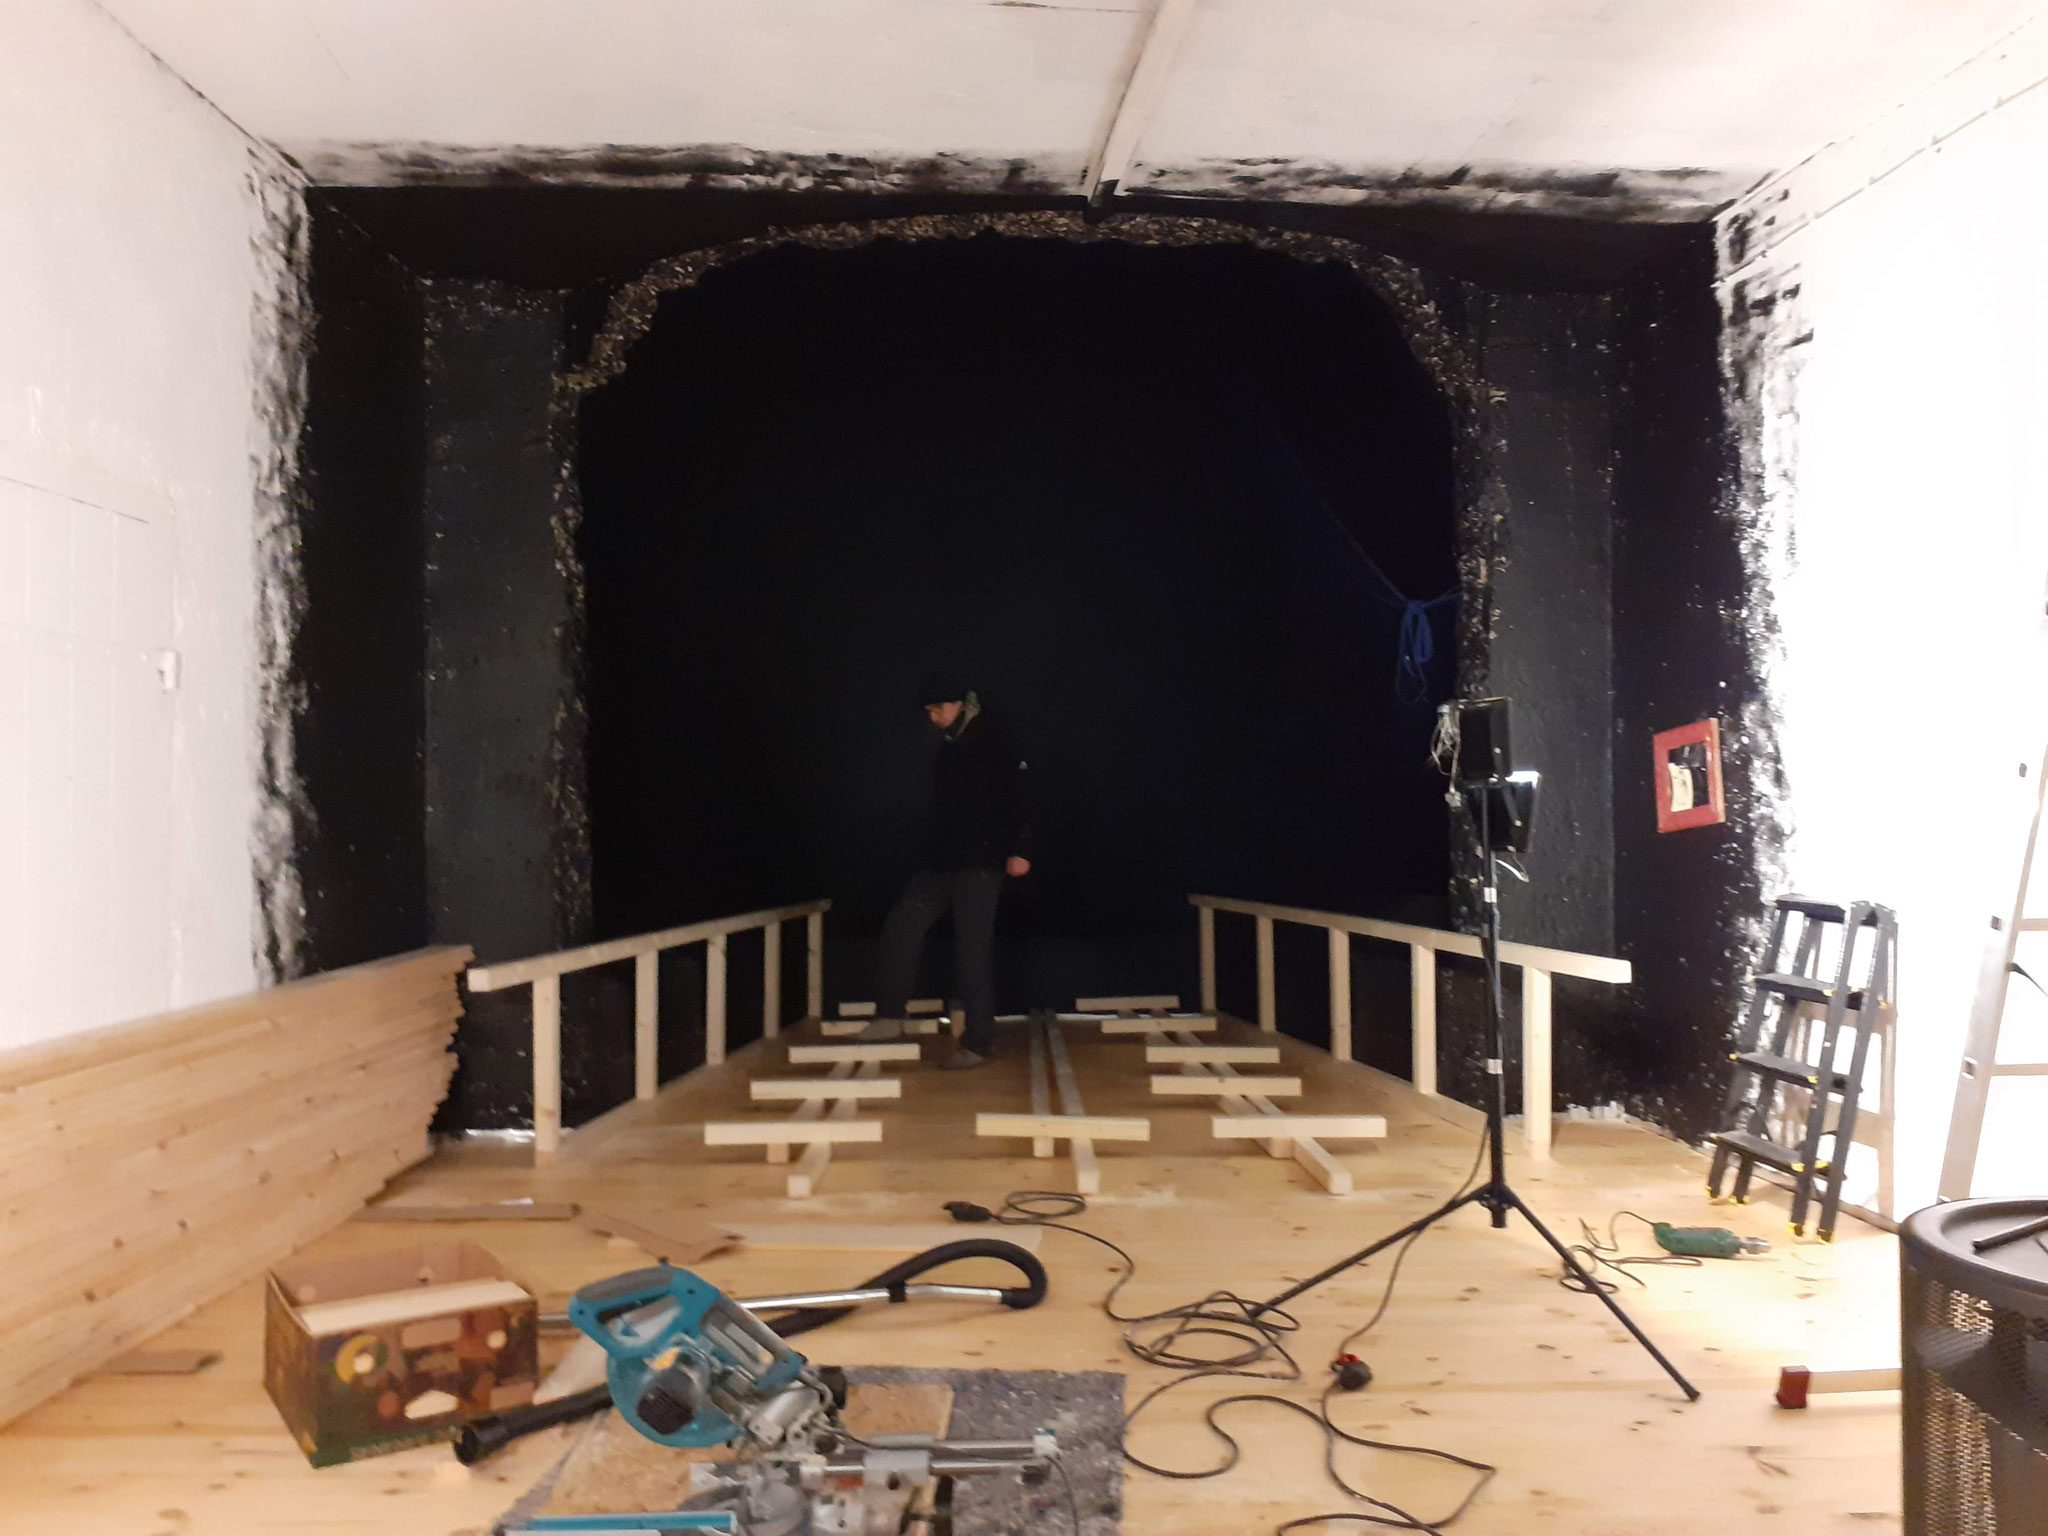 Irgendwann (nach vielen Tagen) ist der Holzboden verlegt und wir beginnen mit dem Bau der Bühne